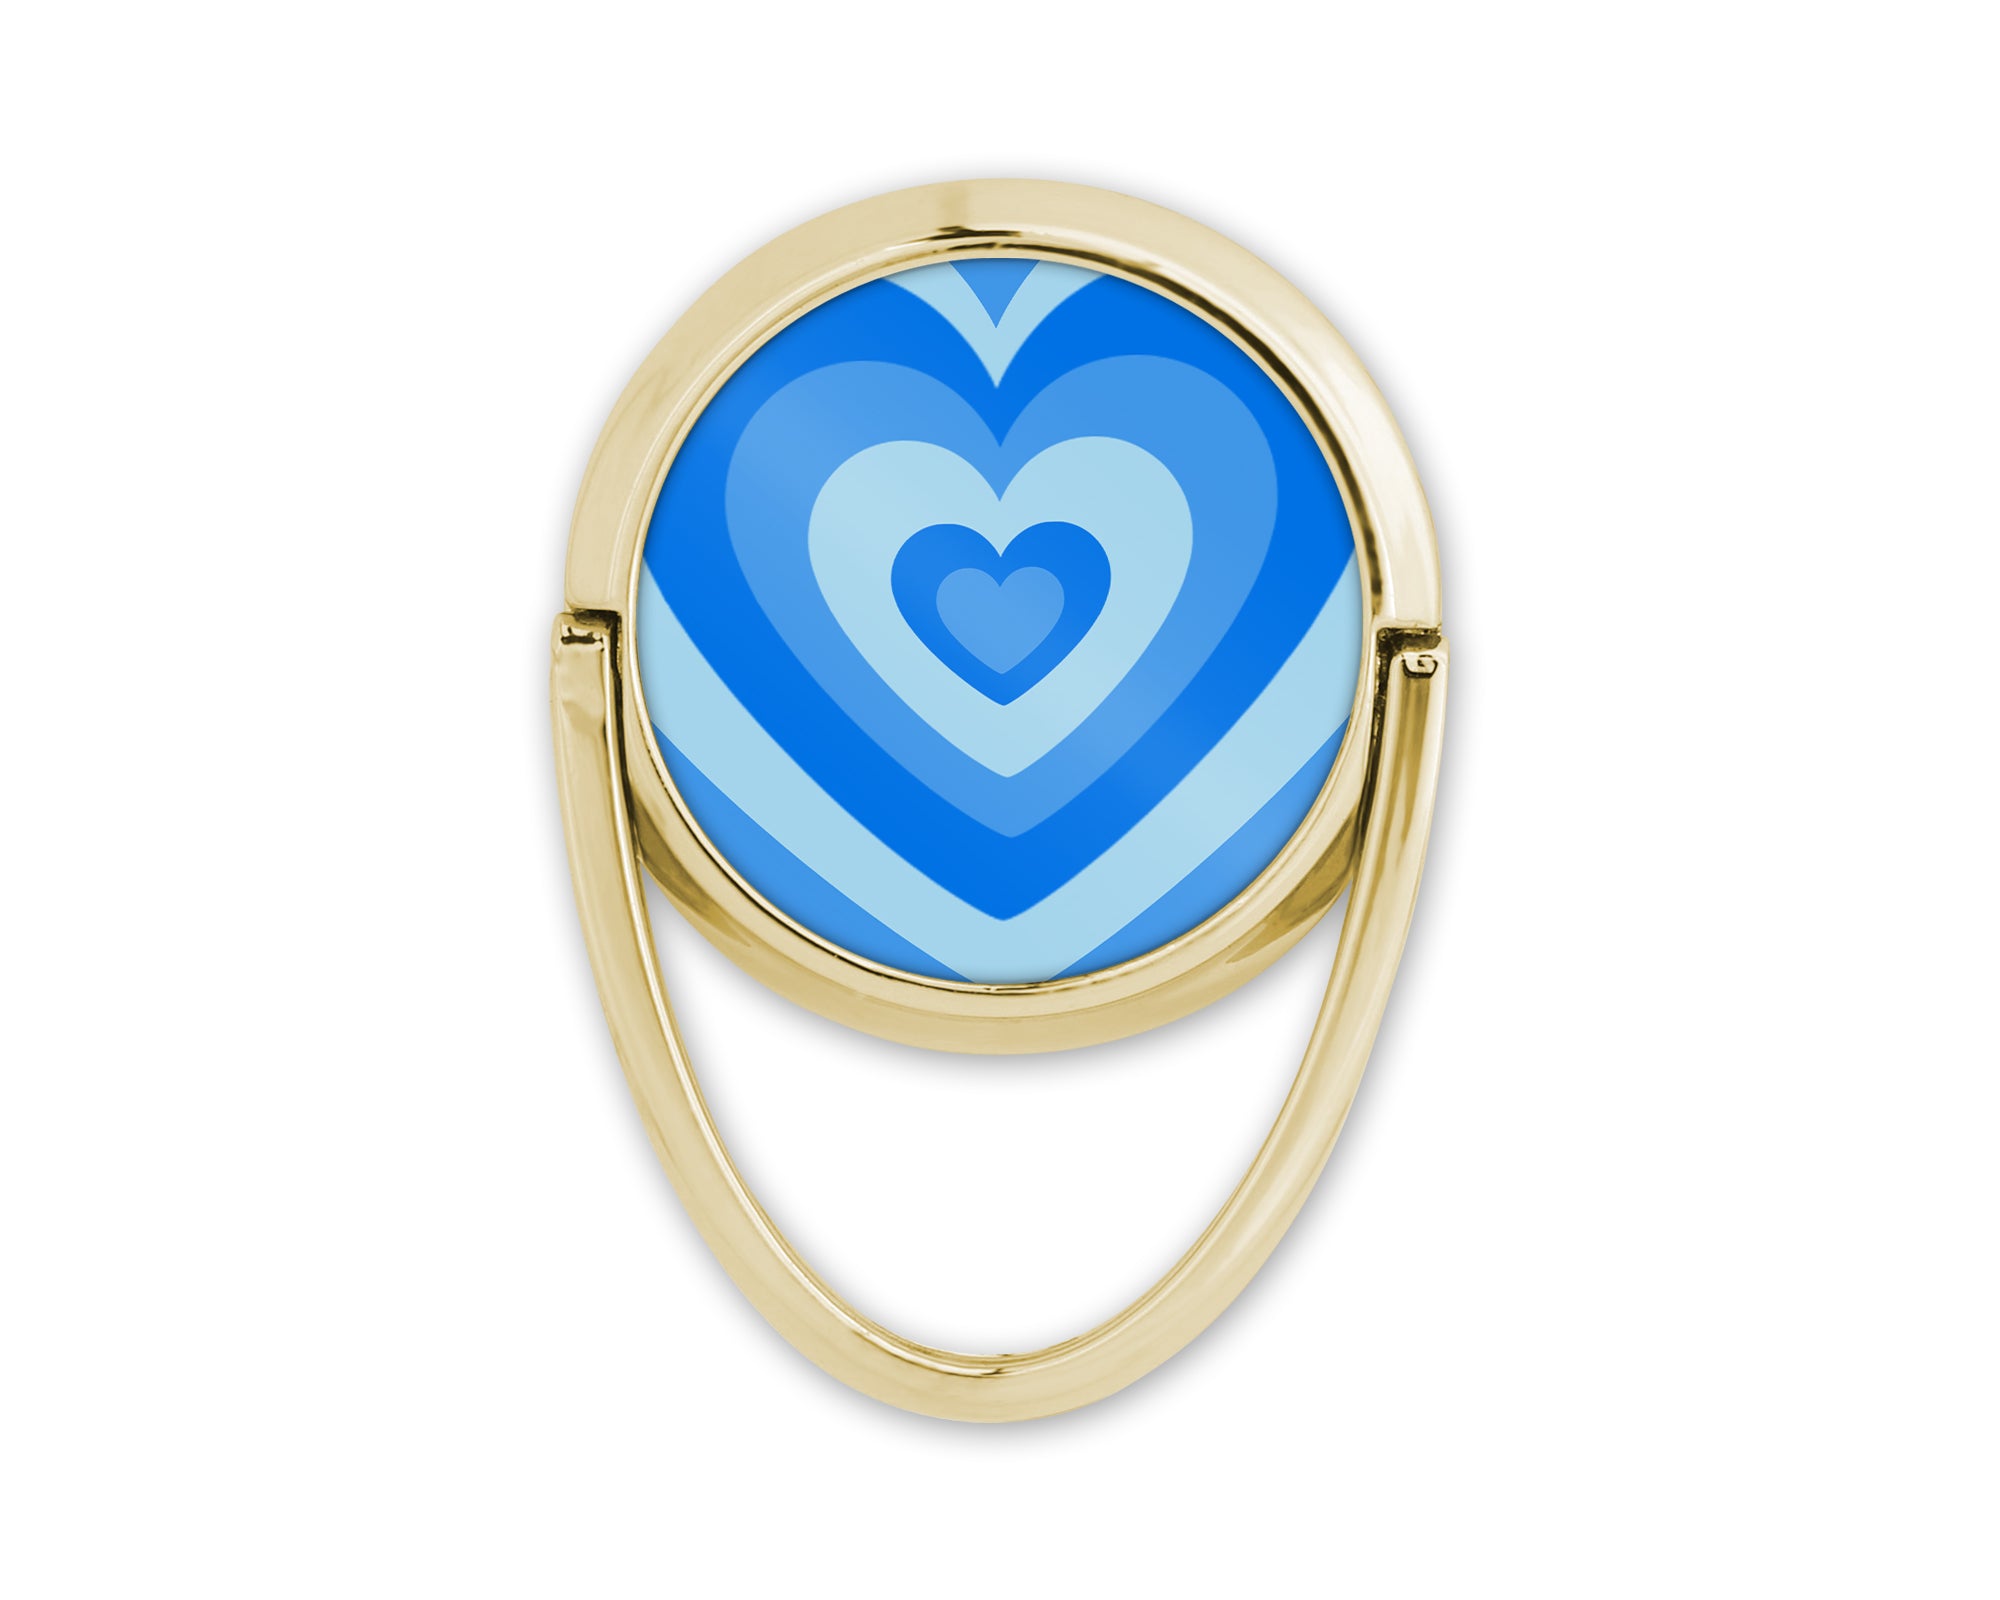 Découvrez notre anneau de téléphone doré, l'accessoire girly qui ajoute une touche d'élégance à votre style. Avec son design original, cet anneau devient bien plus qu'un support pour votre téléphone, c'est un bijou qui complète votre look avec éclat.